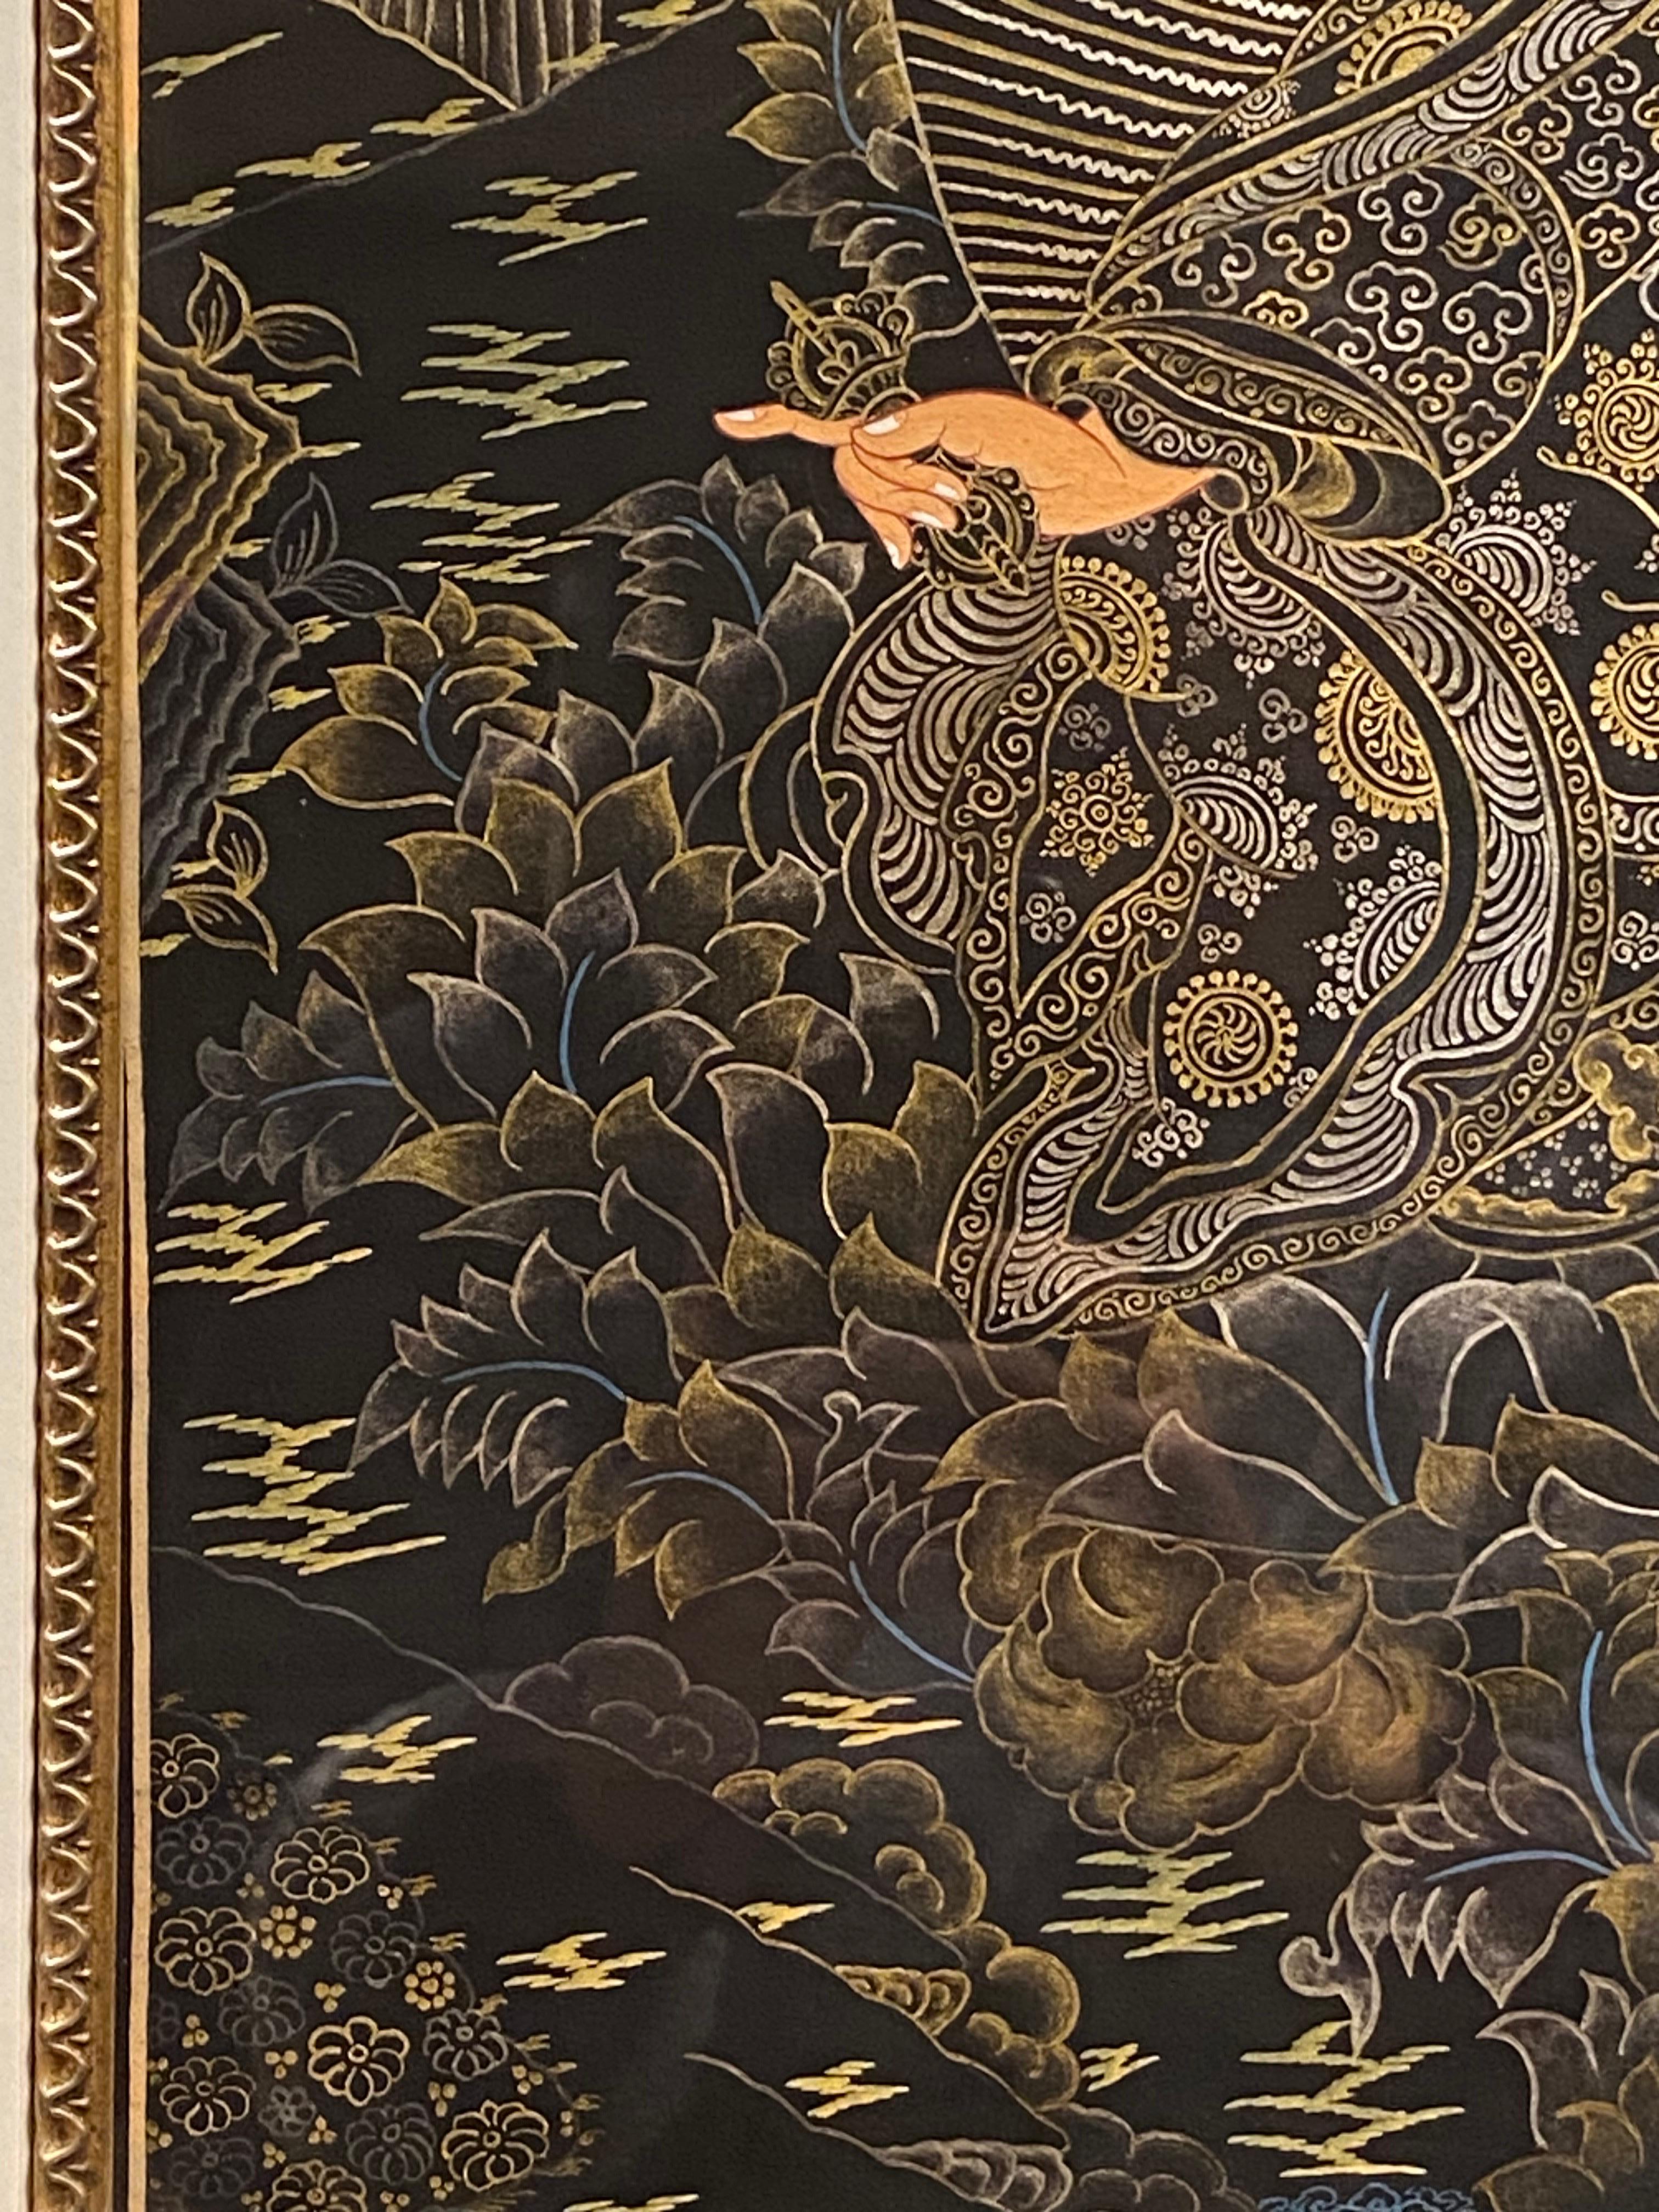 Framed Hand Painted Padmasambhava Thangka on Canvas 24K Gold  For Sale 9